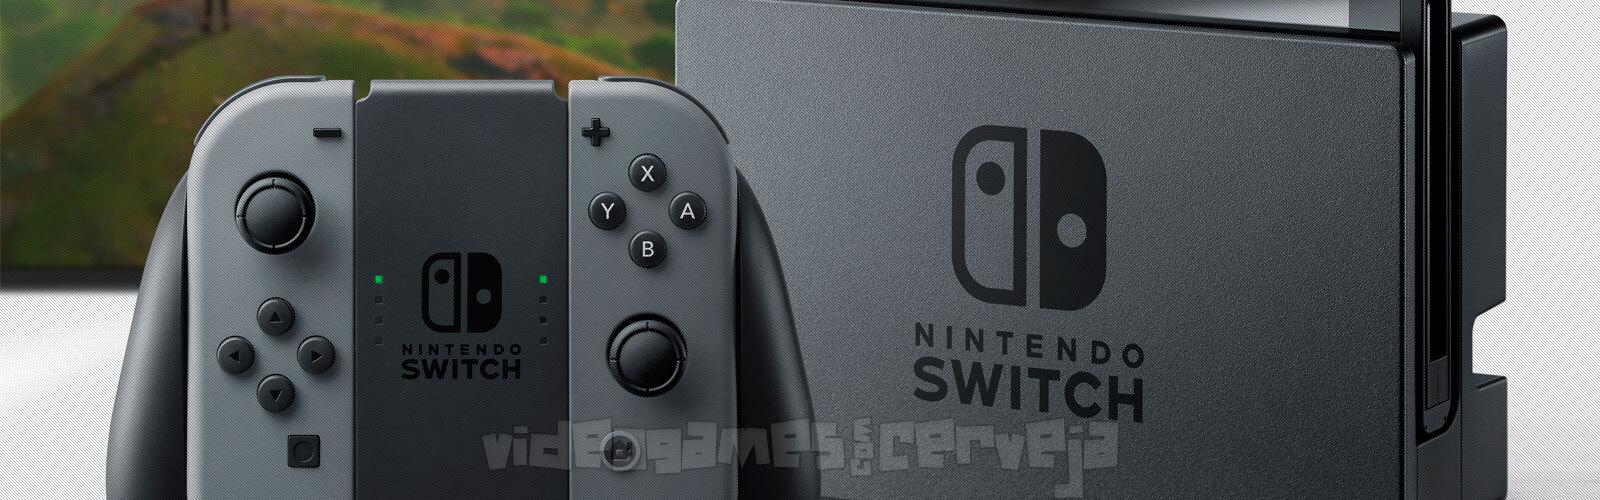 Nintendo Switch - 4 coisas que gostei (e UMA que me incomodou um pouco) Cover